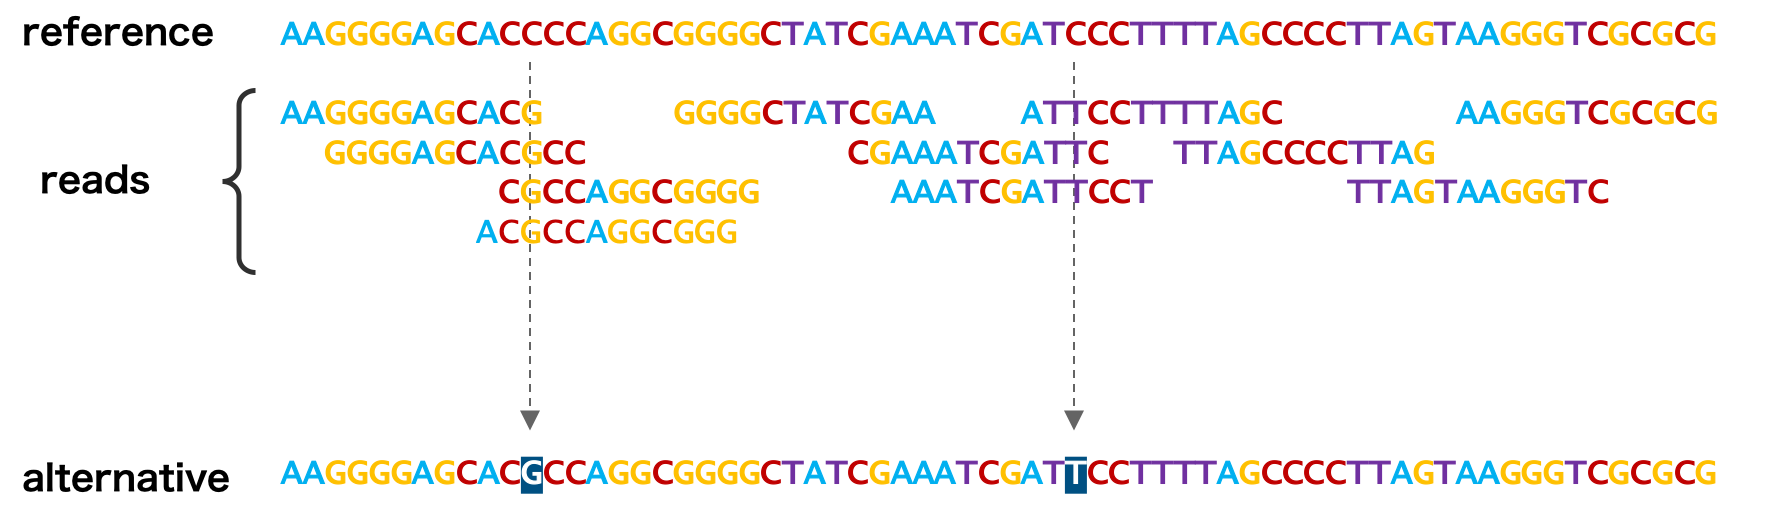 近縁種のゲノム配列を利用してアセンブリーを行う方法